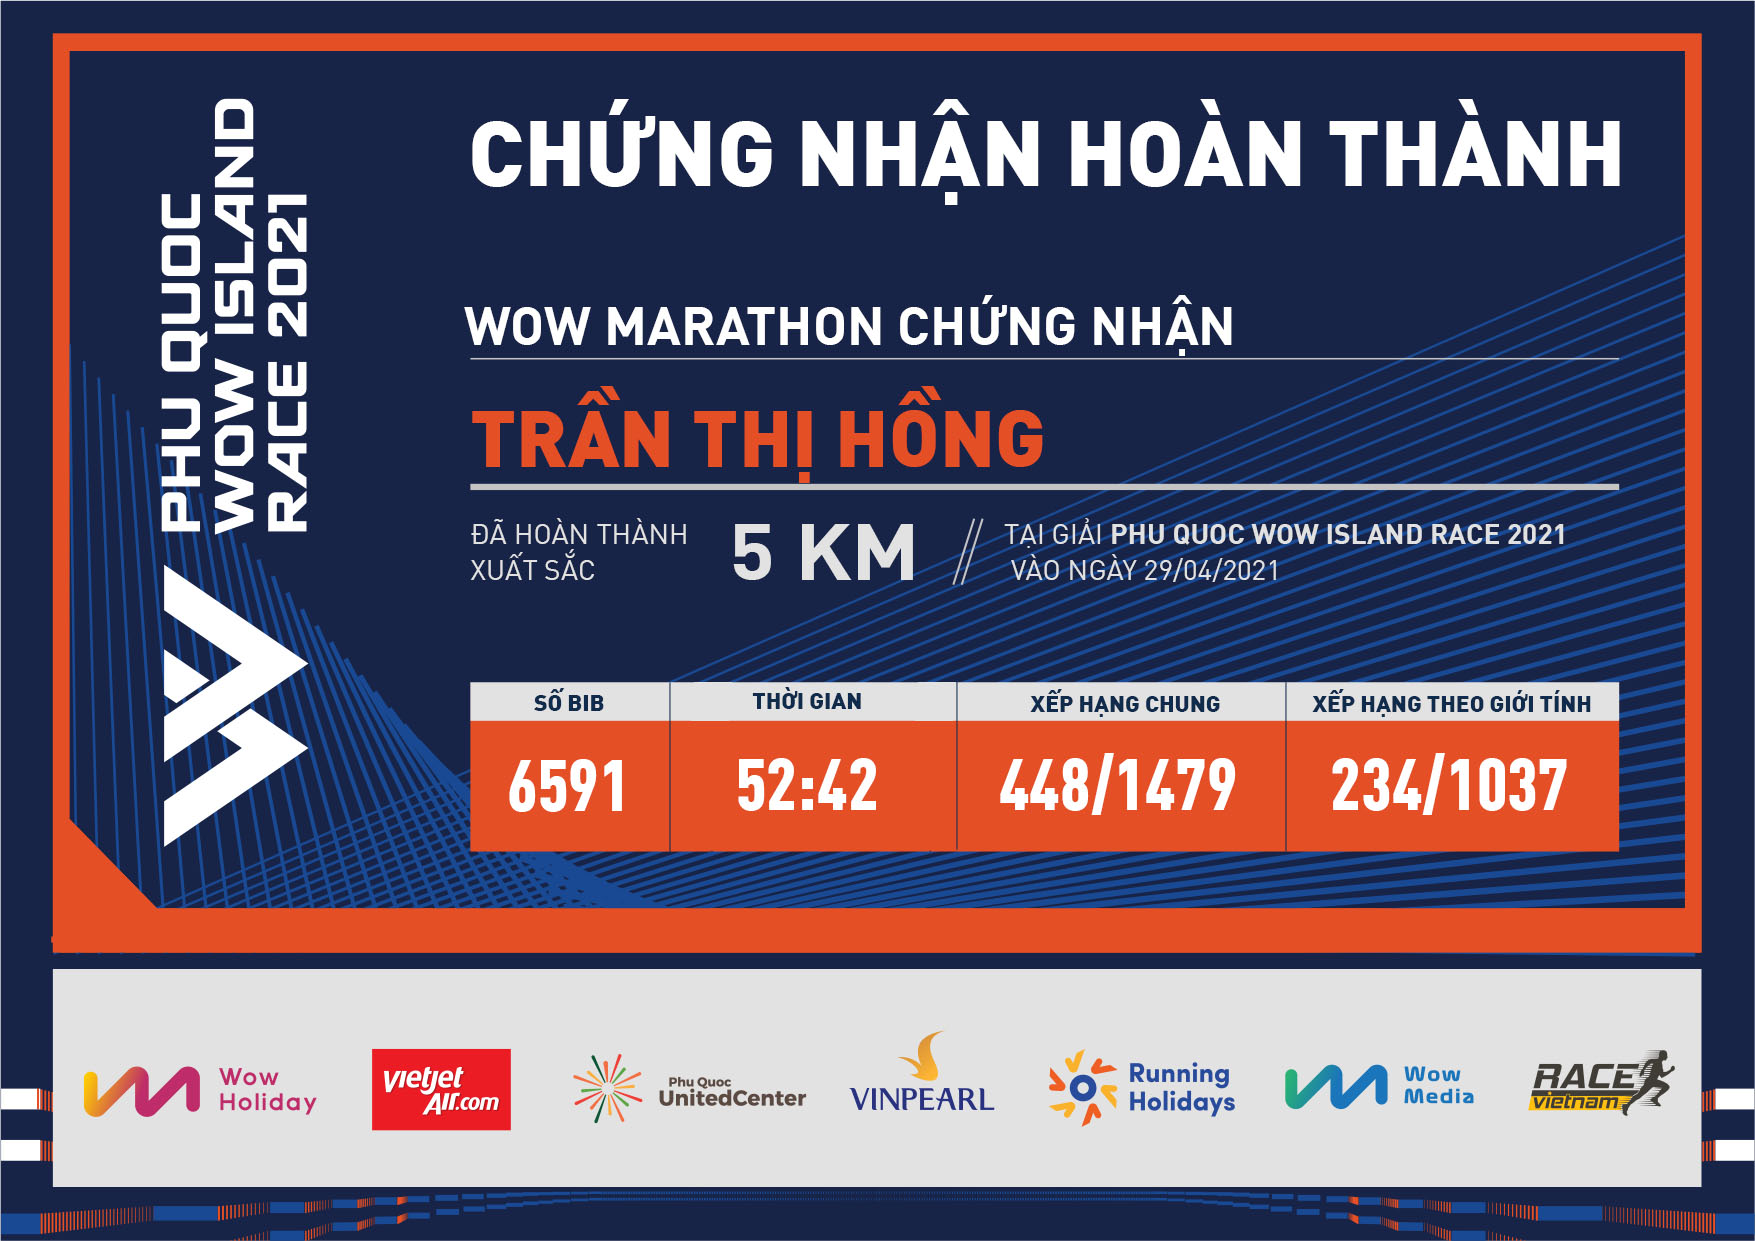 6591 - Trần Thị Hồng